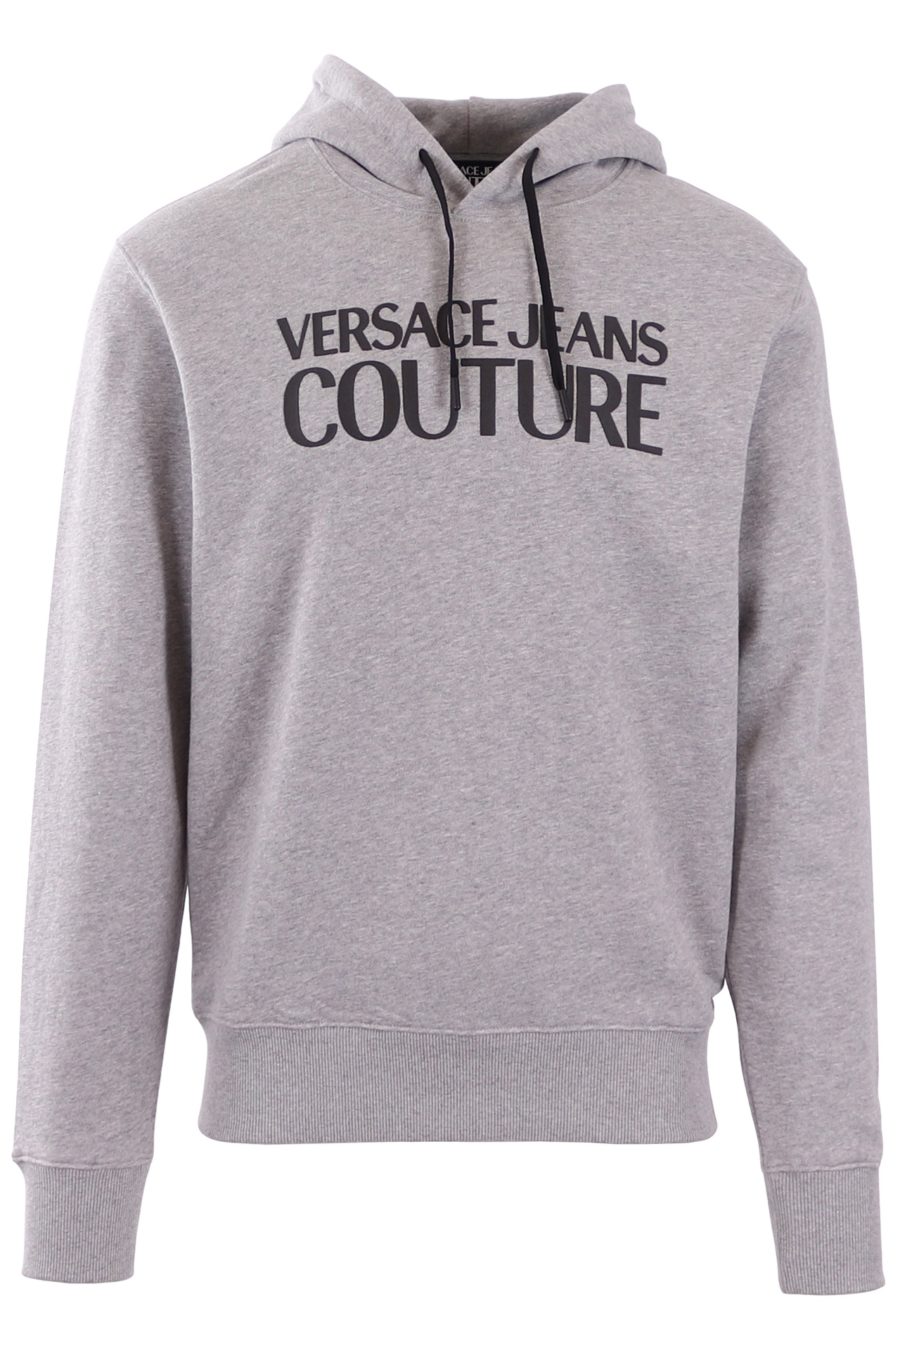 Sudadera Versace Jeans Couture con capucha color gris - f70a59c5df3ab115e7891e52b5b1cca54aba3dd7